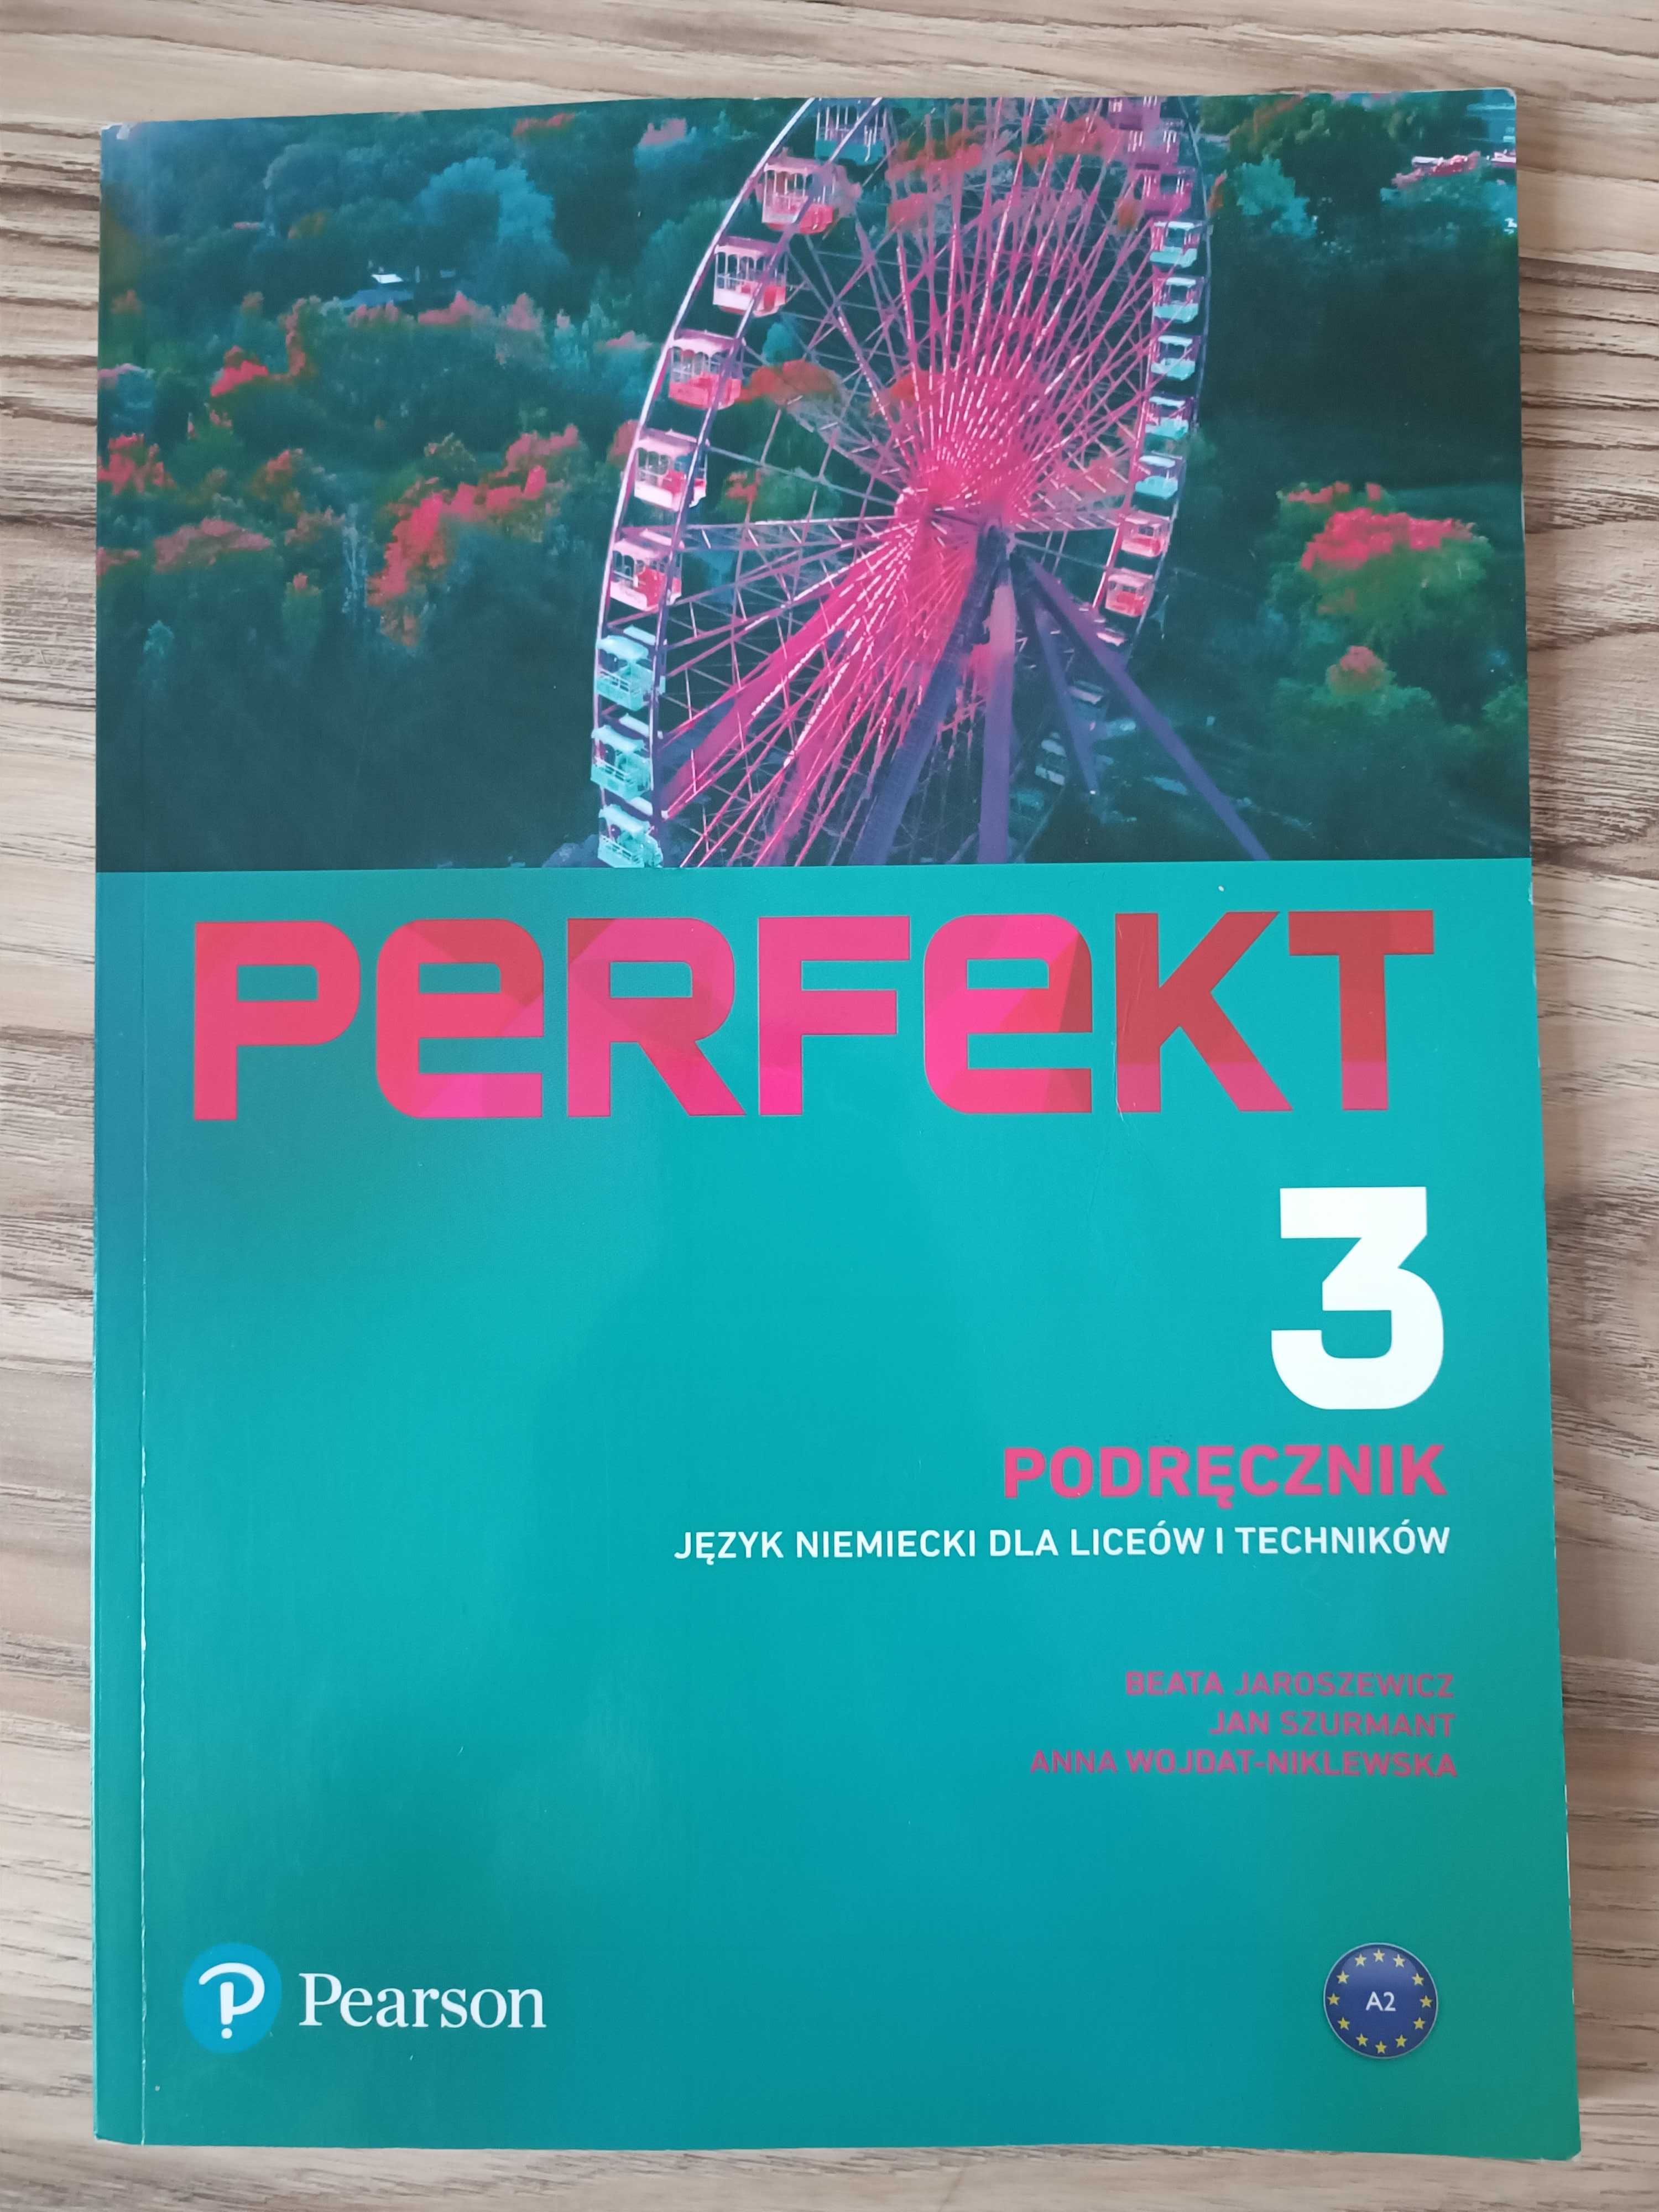 Podręcznik do Języka Niemieckiego "Perfekt 3"